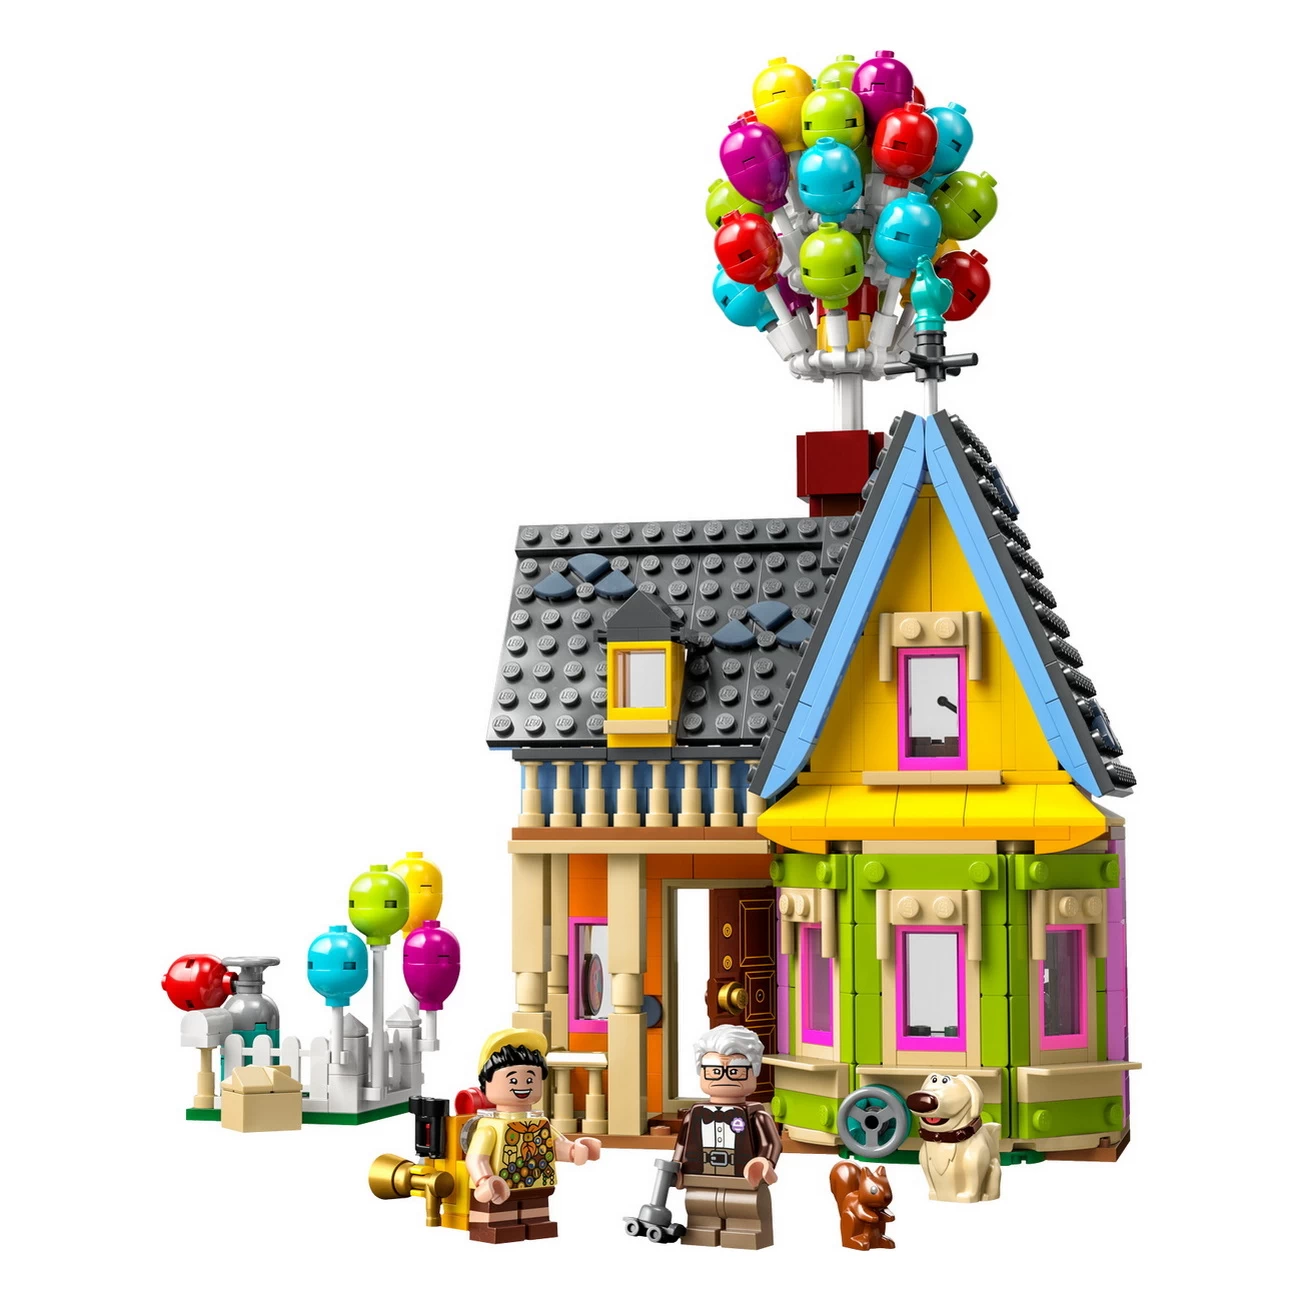 LEGO Disney 43217 - Carls Haus aus Oben